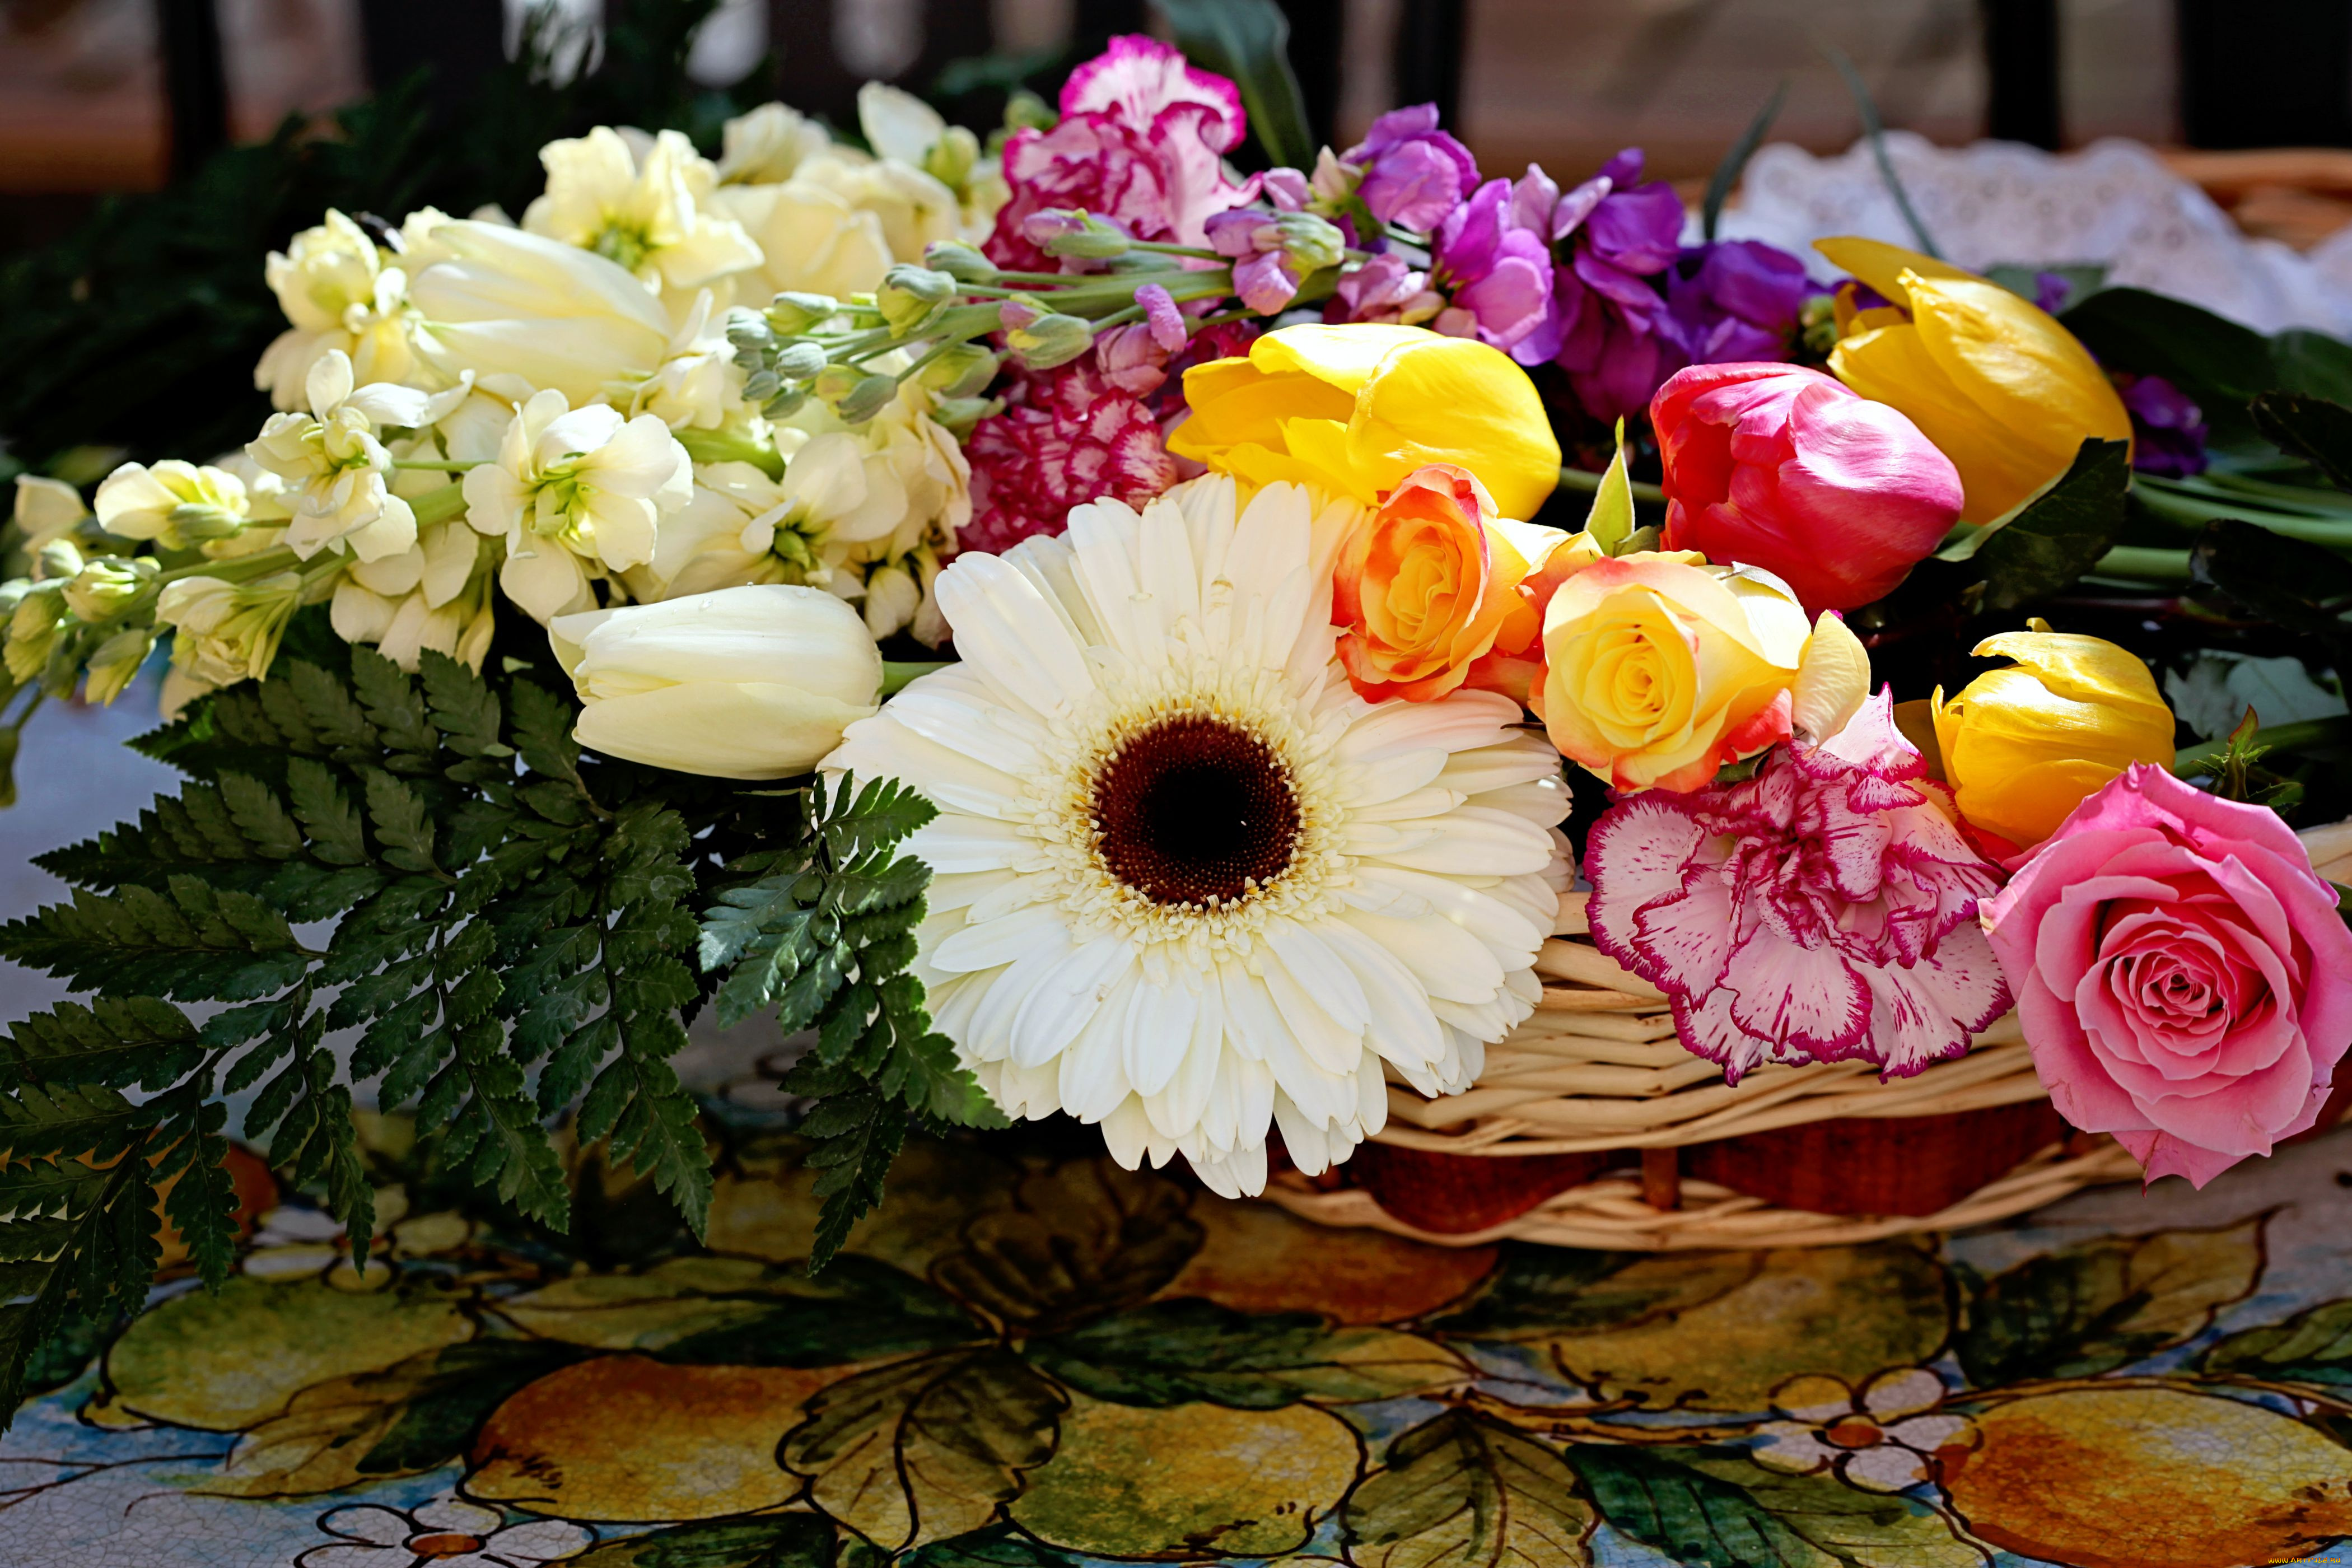 Много цветов на столе. Красивый букет. Цветы букеты шикарные. Красивый букетик. Роскошный букет цветов.